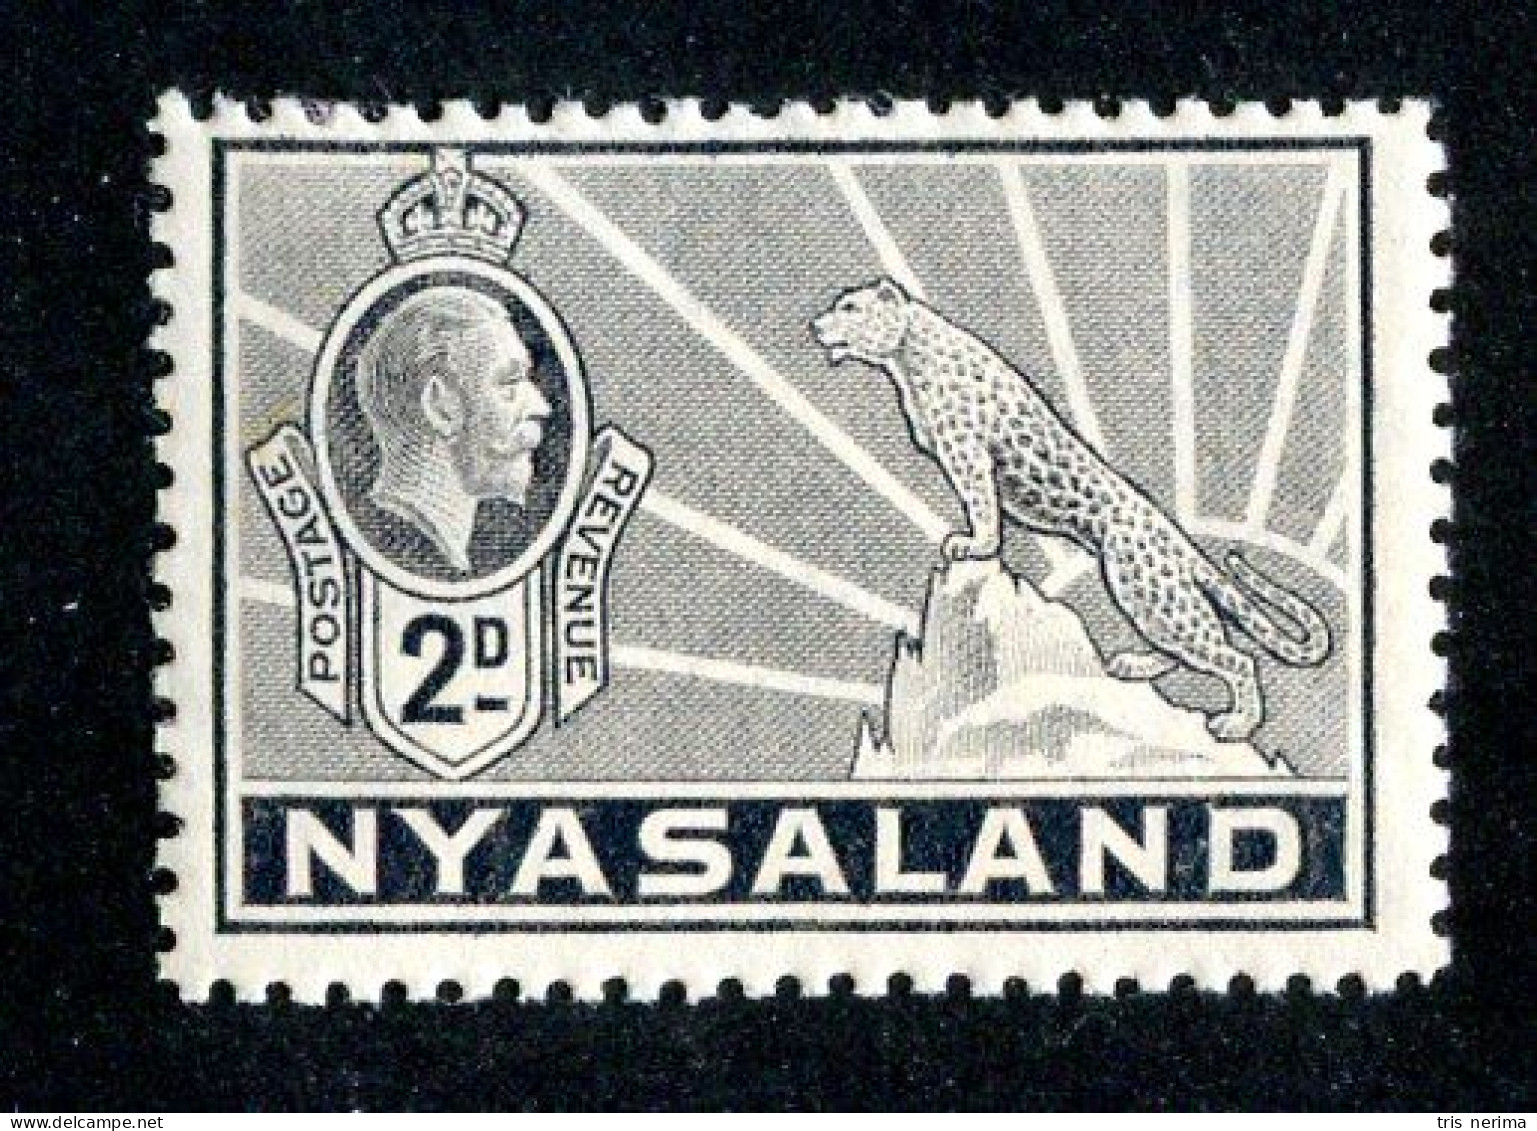 580 BCXX 1934 Scott # 41 Mnh** (offers Welcome) - Nyassaland (1907-1953)